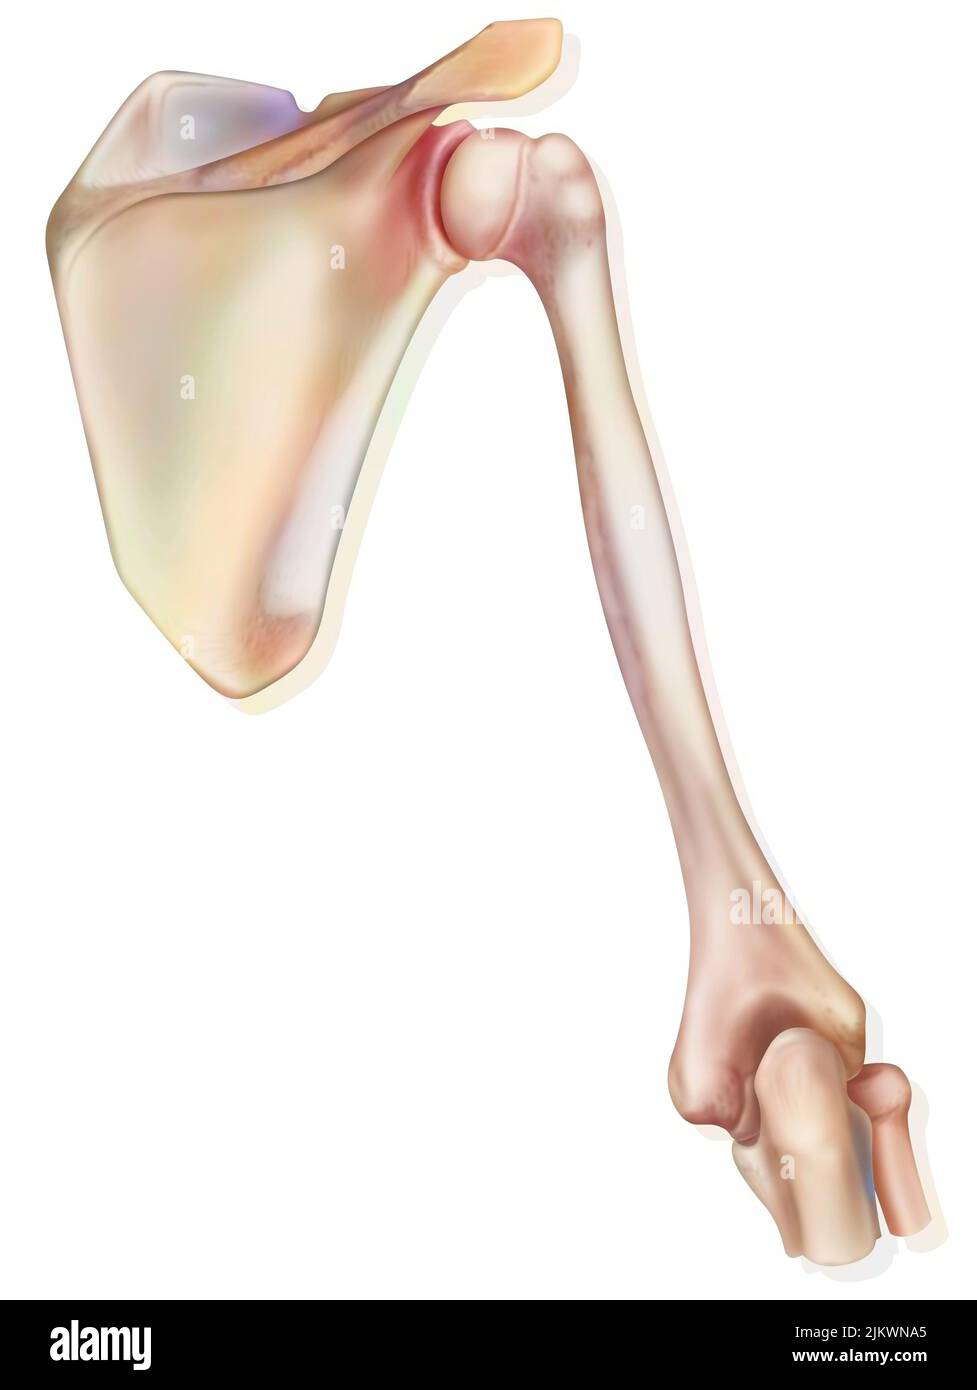 Schulter und die Knochen, die sie ausmachen: Die Schulterblatt, der Oberarm. Stockfoto